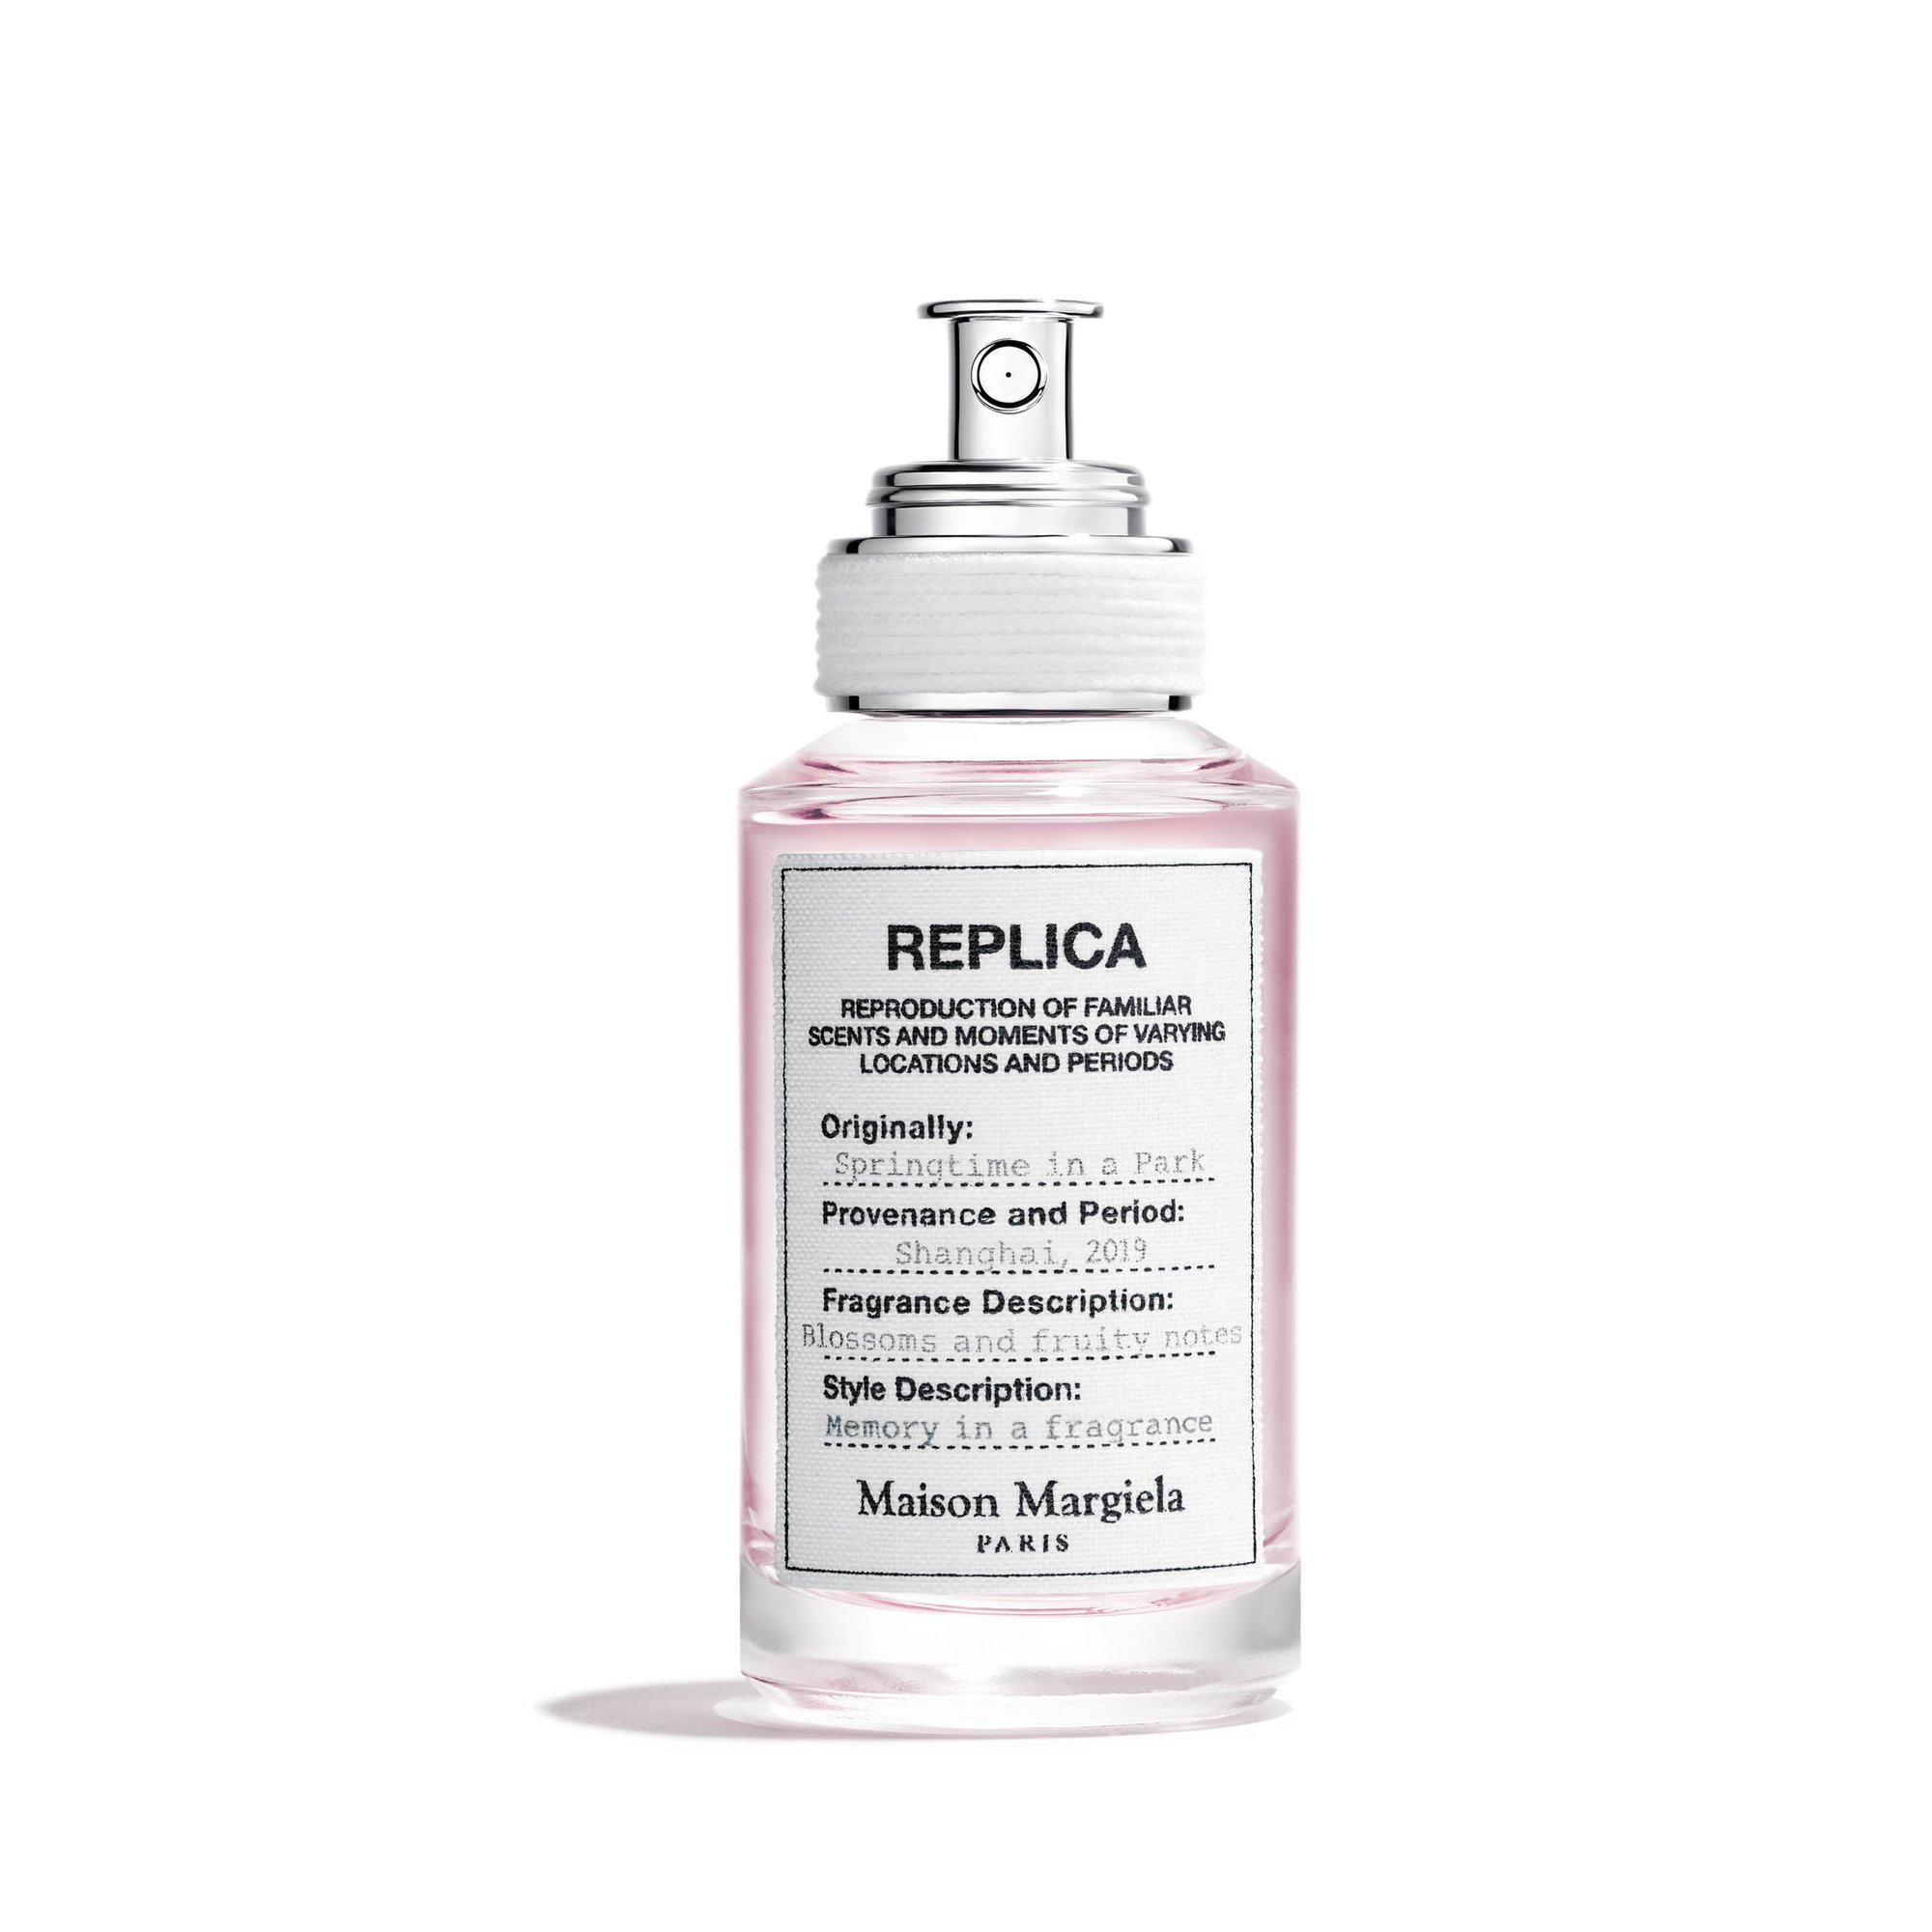 メゾン マルジェラの香水「レプリカ」から30mLのミニボトルが登場 